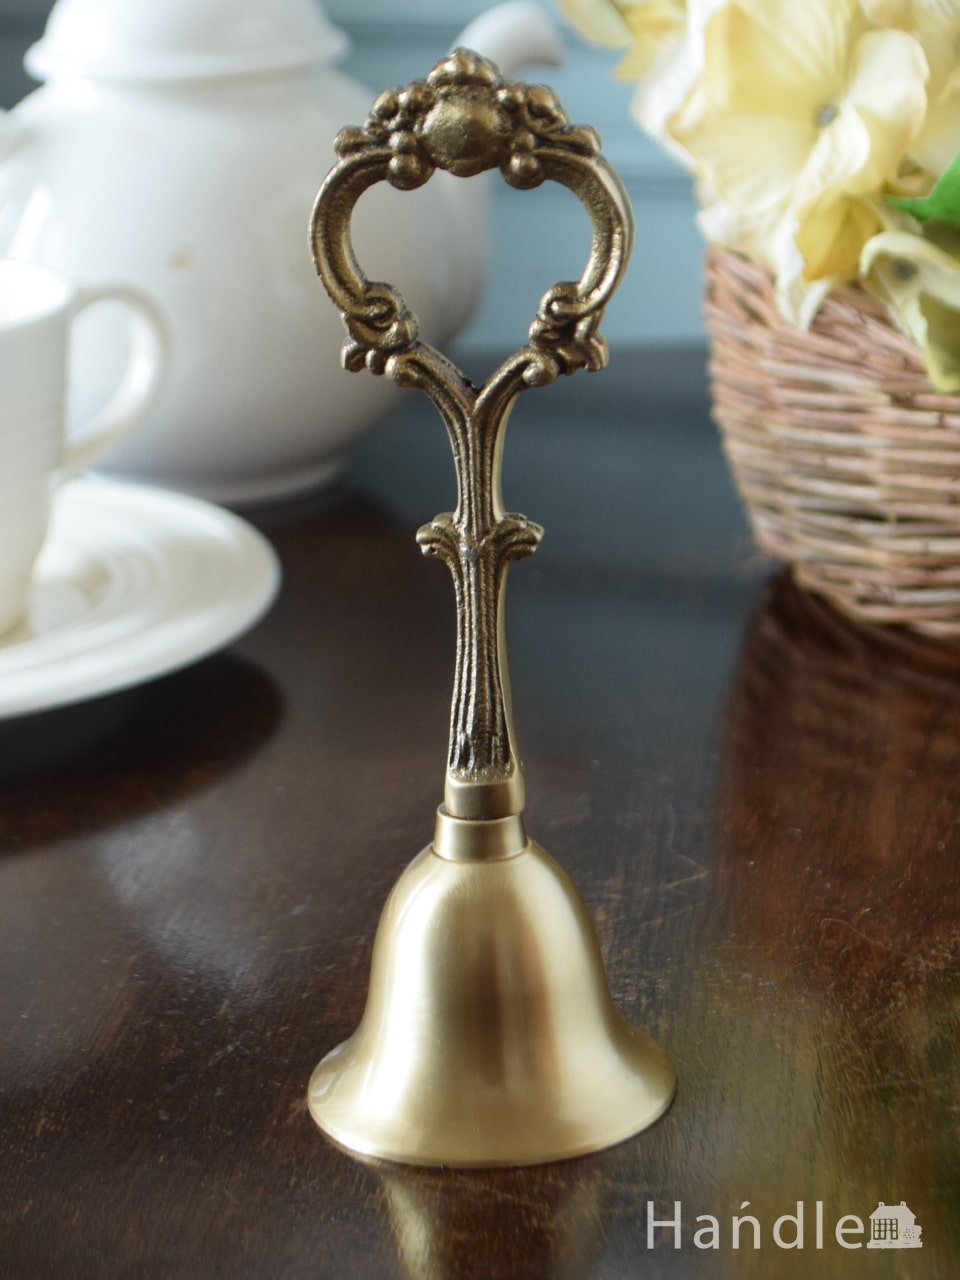 アンティーク調のおしゃれな雑貨、真鍮製のハンドベル（ゴールド） (n12-432)